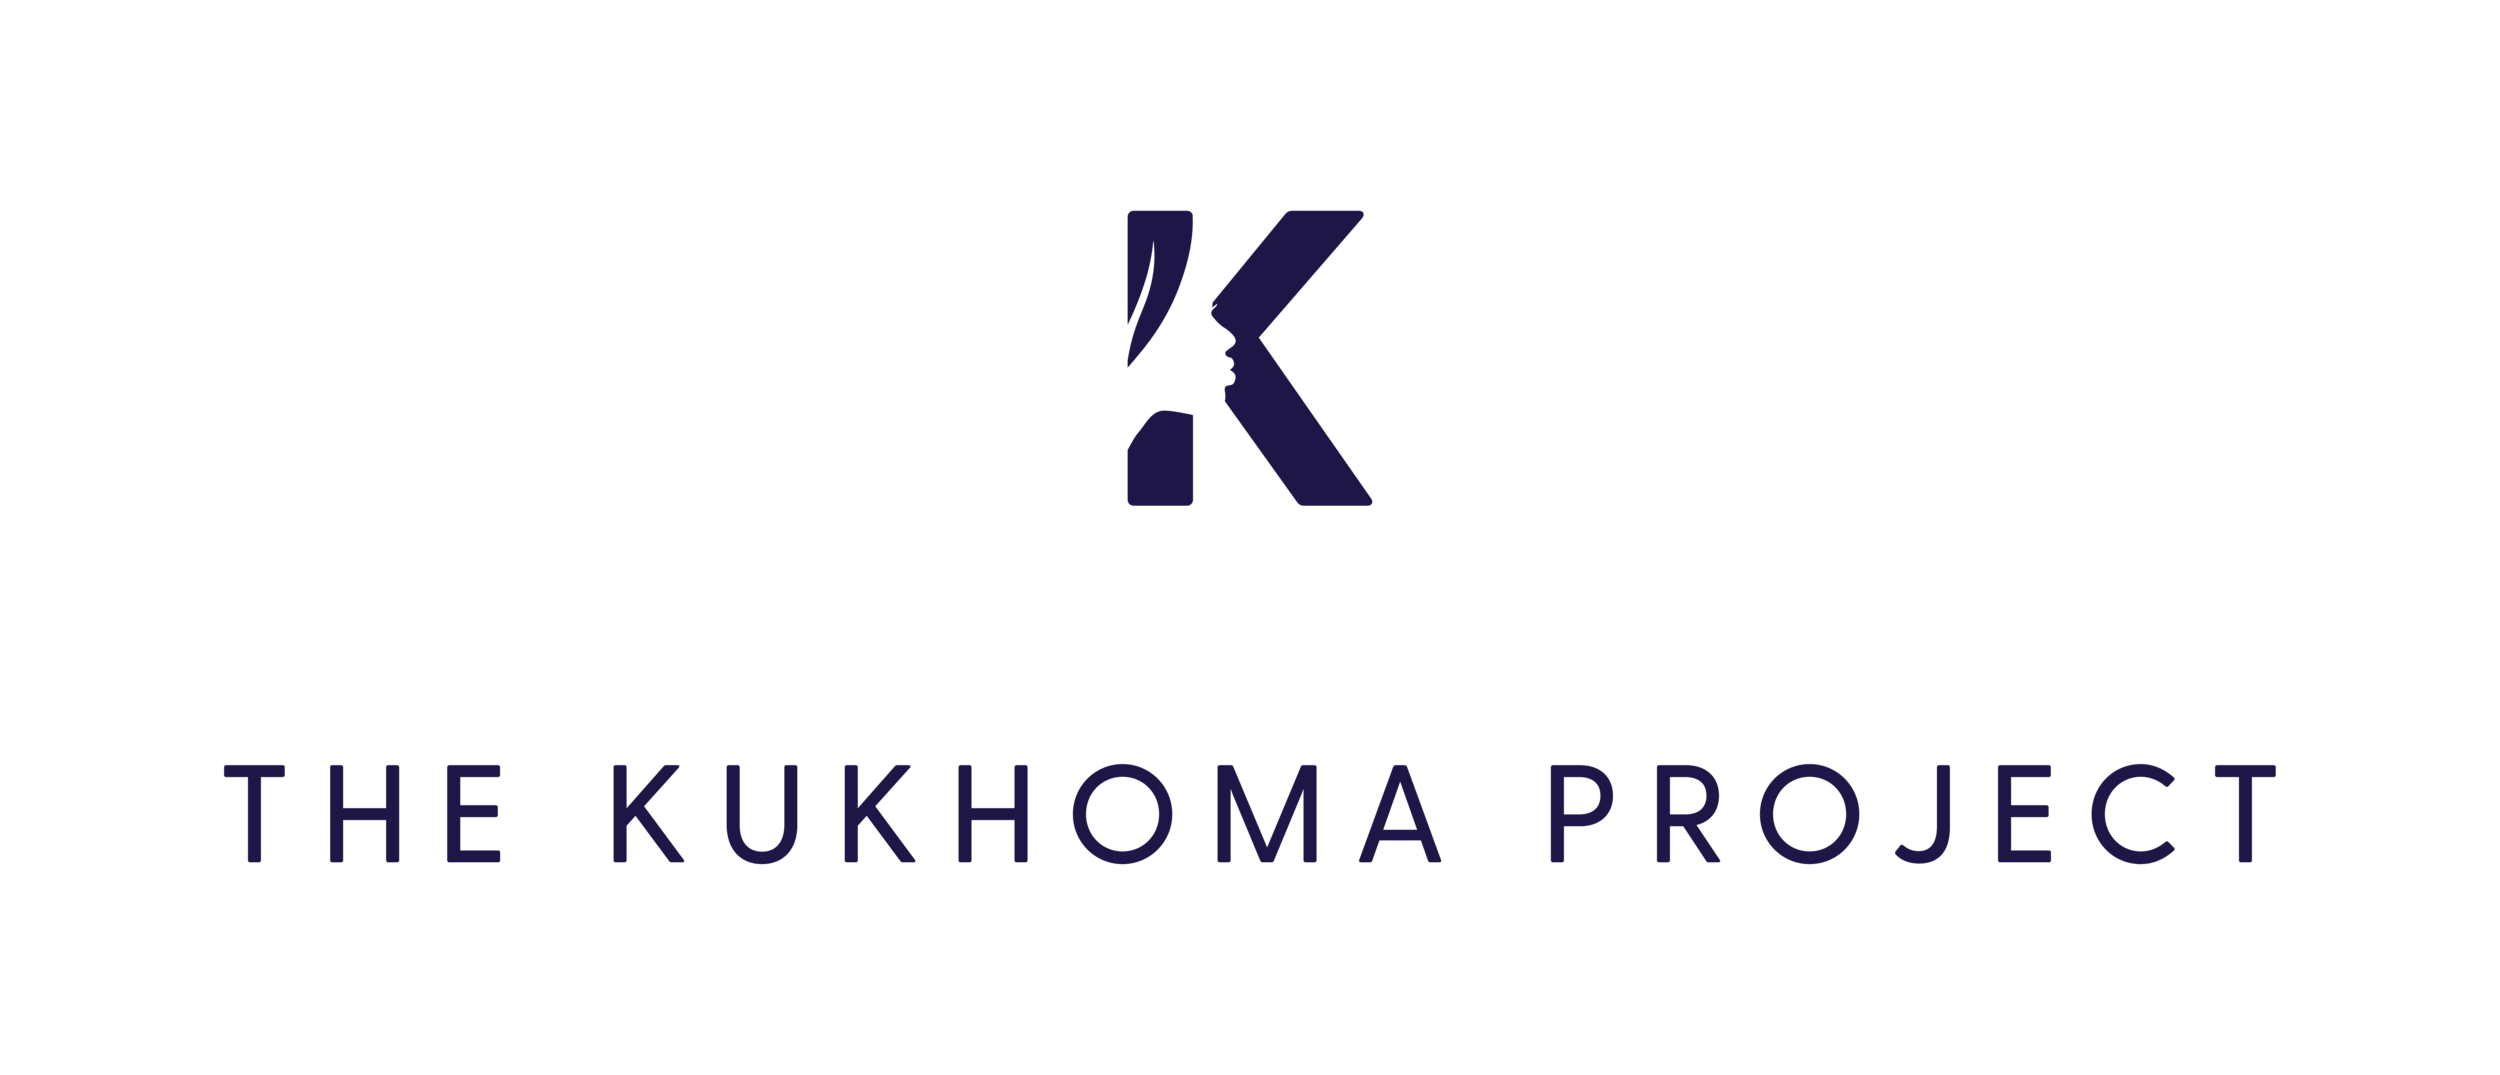 The Kukhoma Project